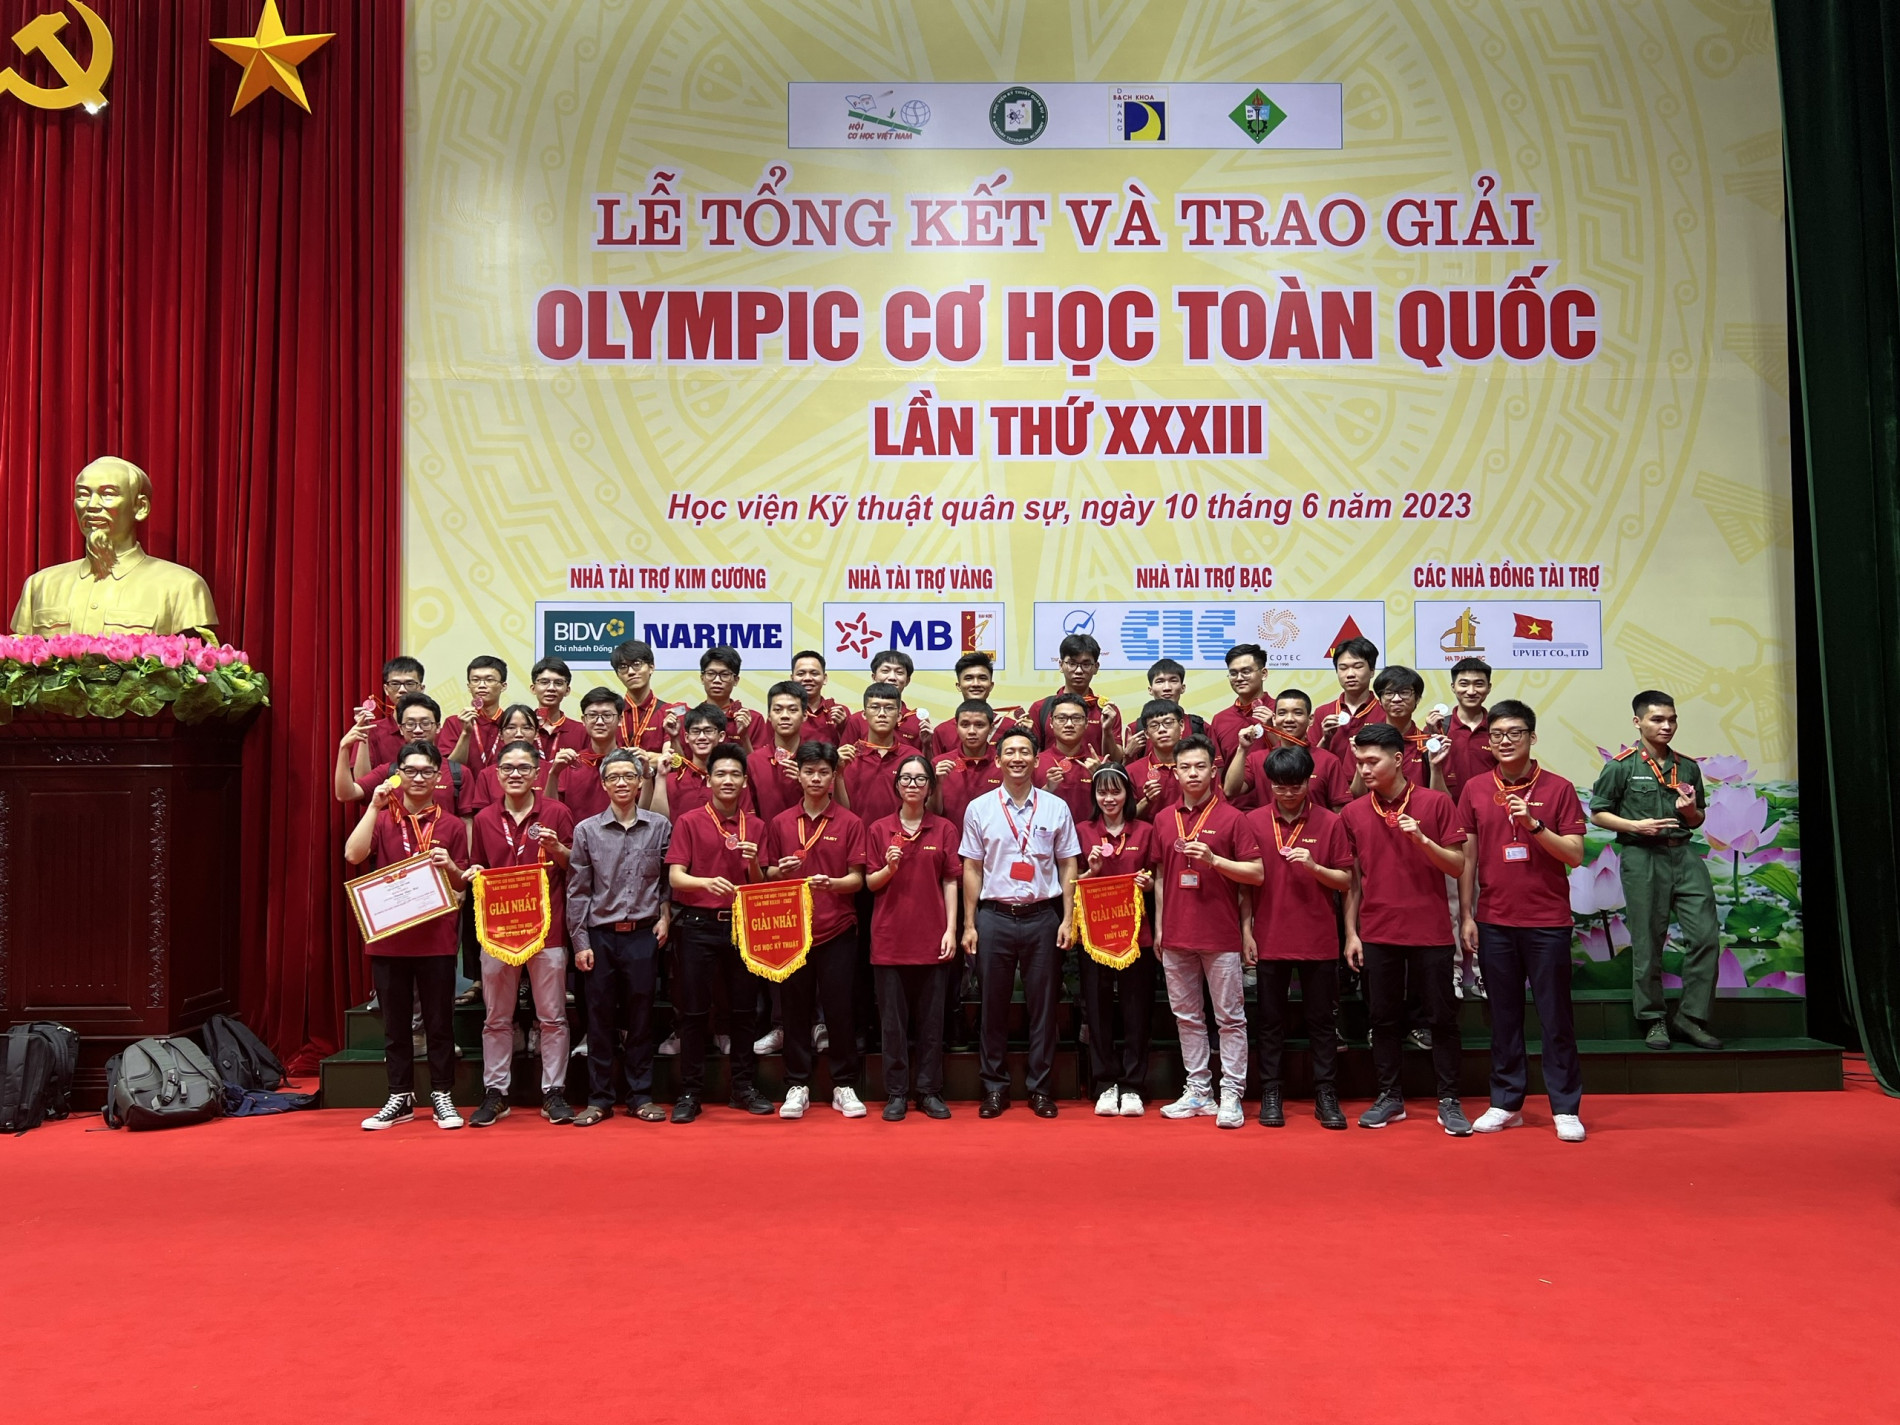 PGS. Phạm Văn Sáng (áo trắng) cùng các sinh viên, giảng viên Trường Cơ khí, Đại học Bách khoa Hà Nội đạt thành tích cao tạo cuộc thi Olympic Cơ học toàn quốc năm 2023